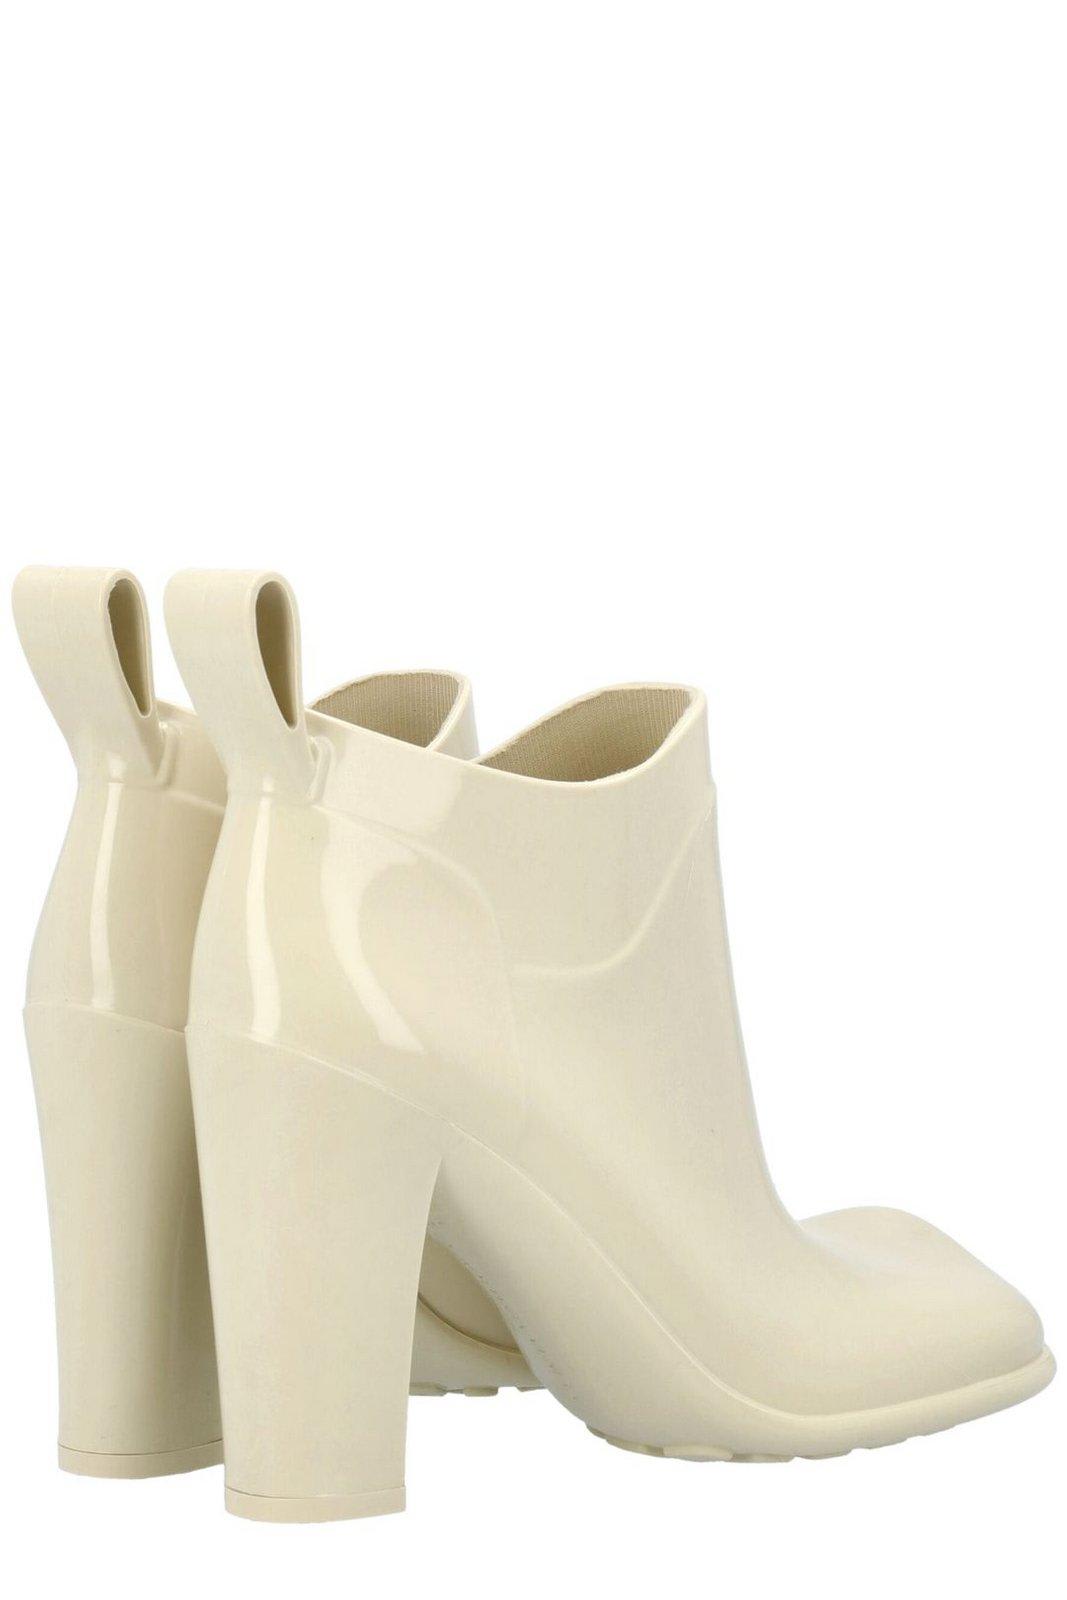 Shop Bottega Veneta Shine Square Toe Ankle Rain Boots